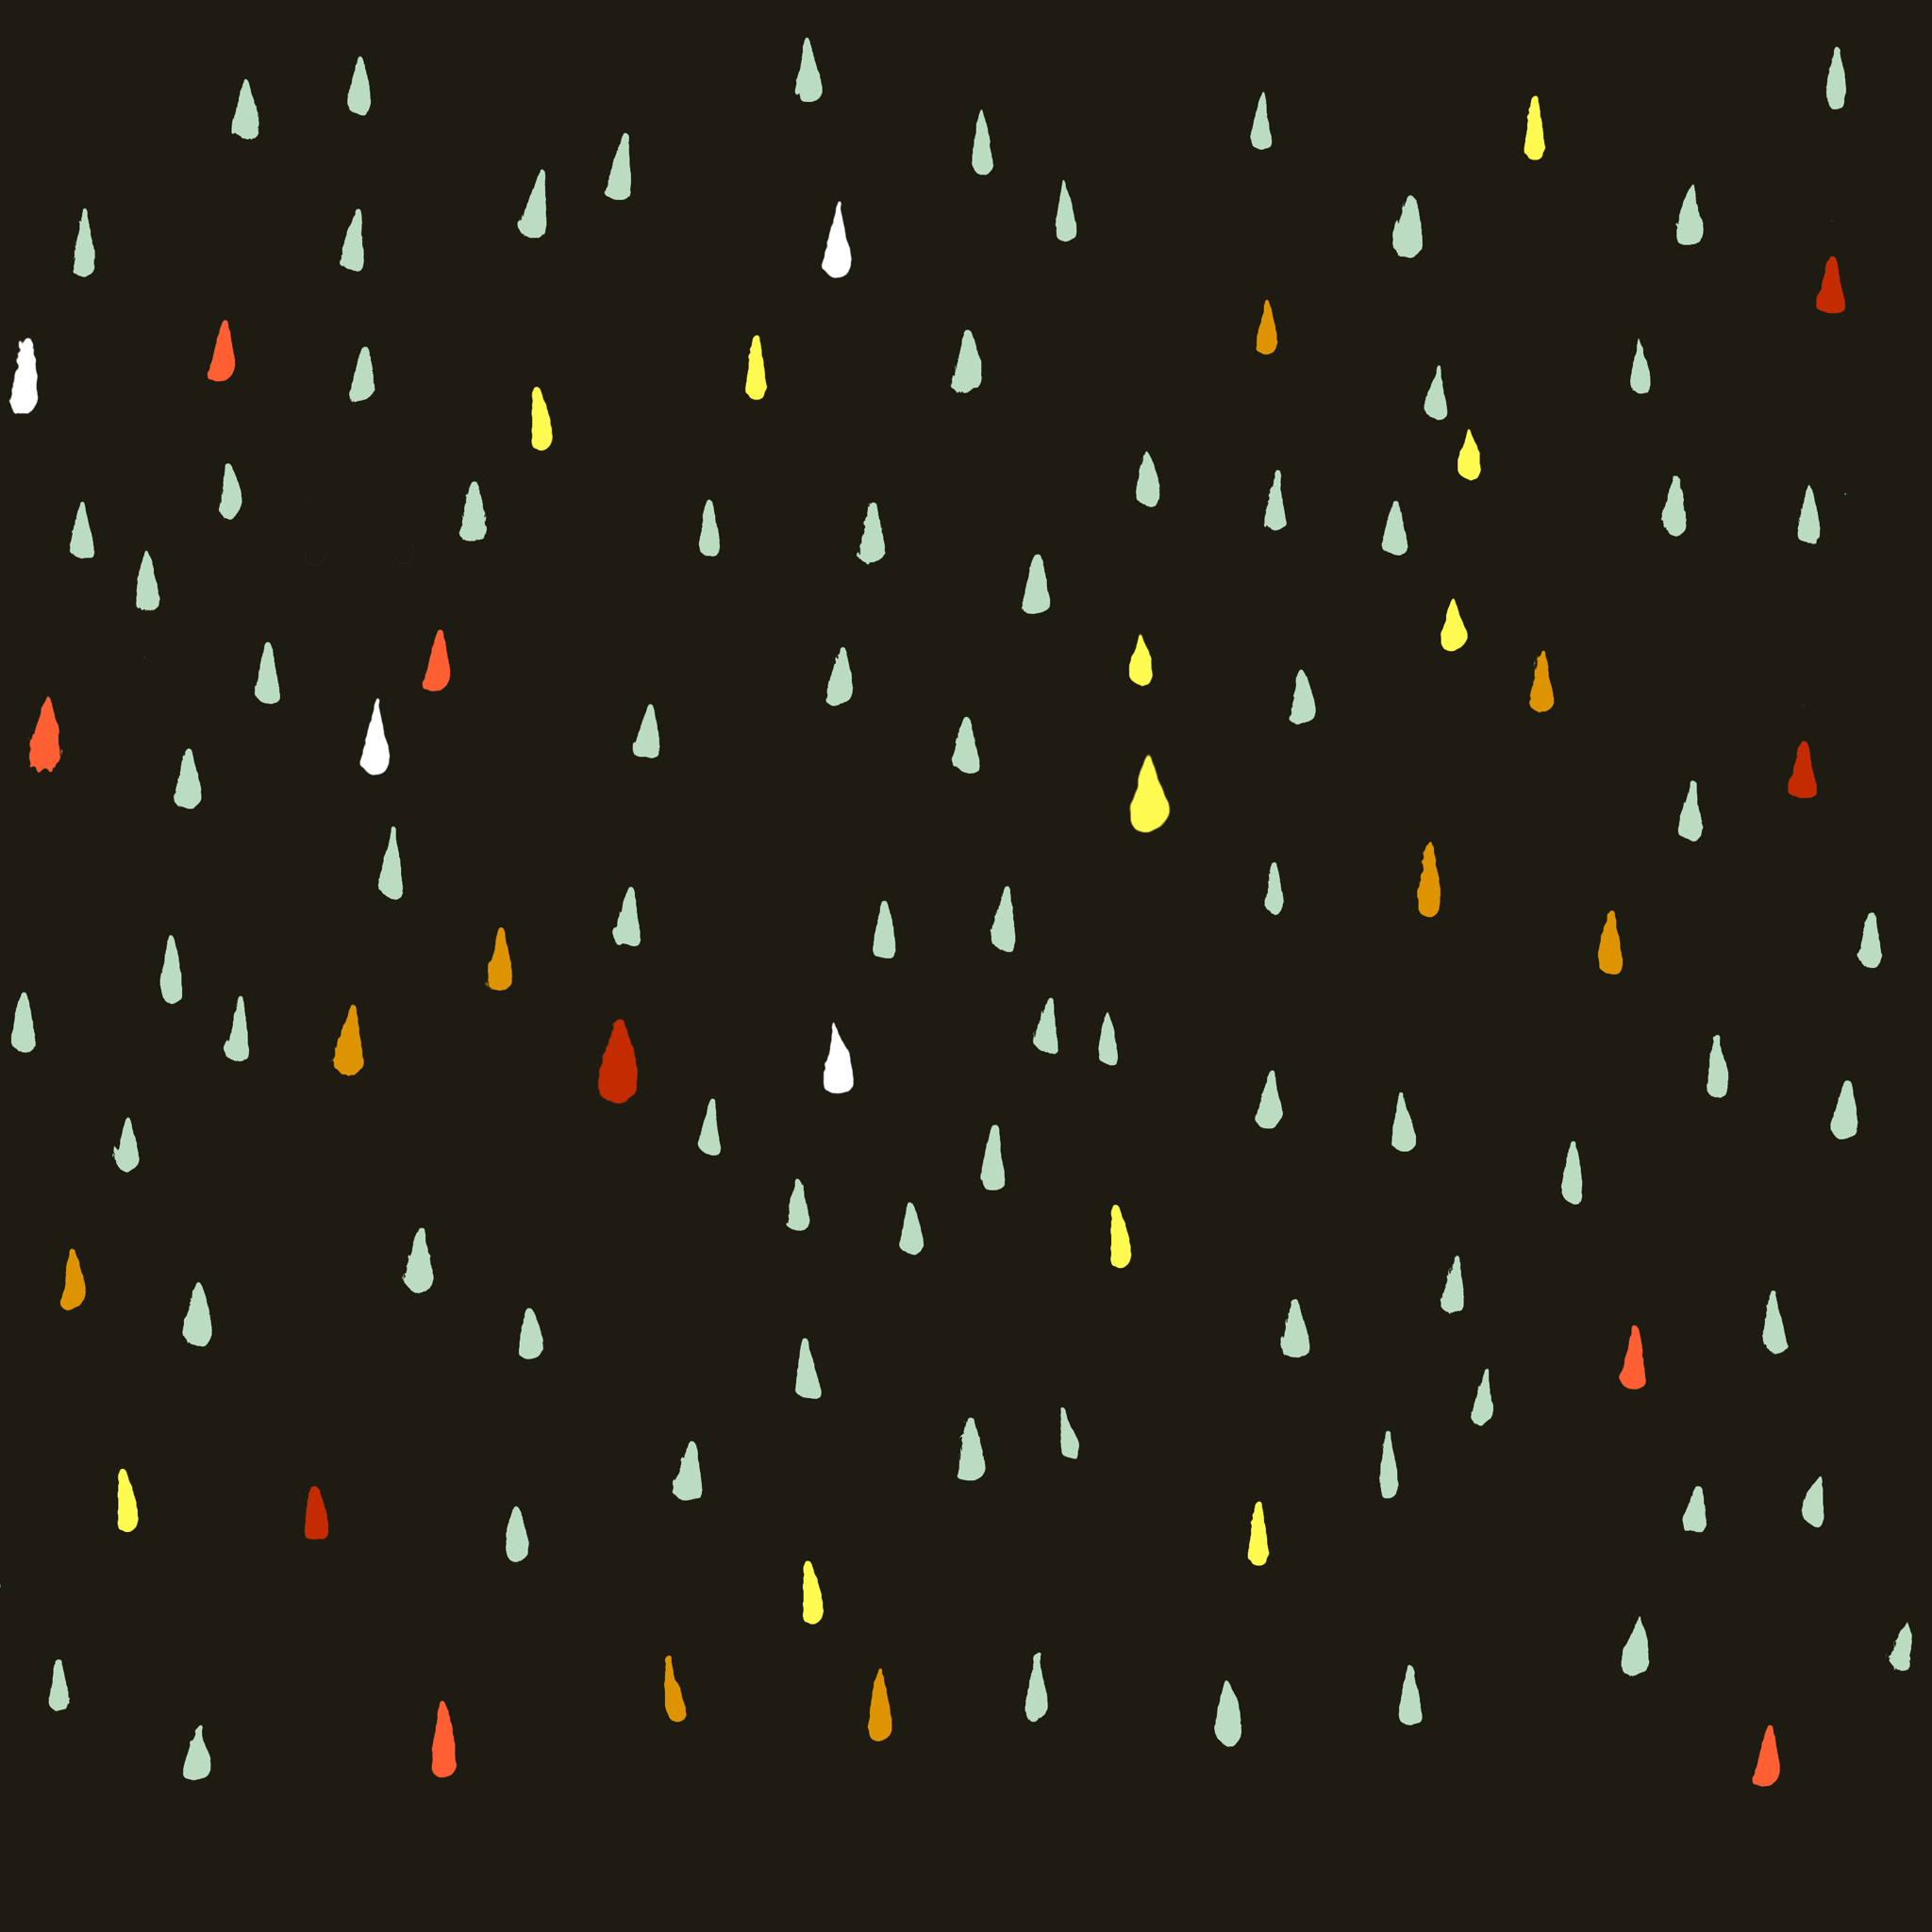 黒地にカラフルな雨粒模様がおしゃれなipad壁紙 Ipad タブレット壁紙ギャラリー